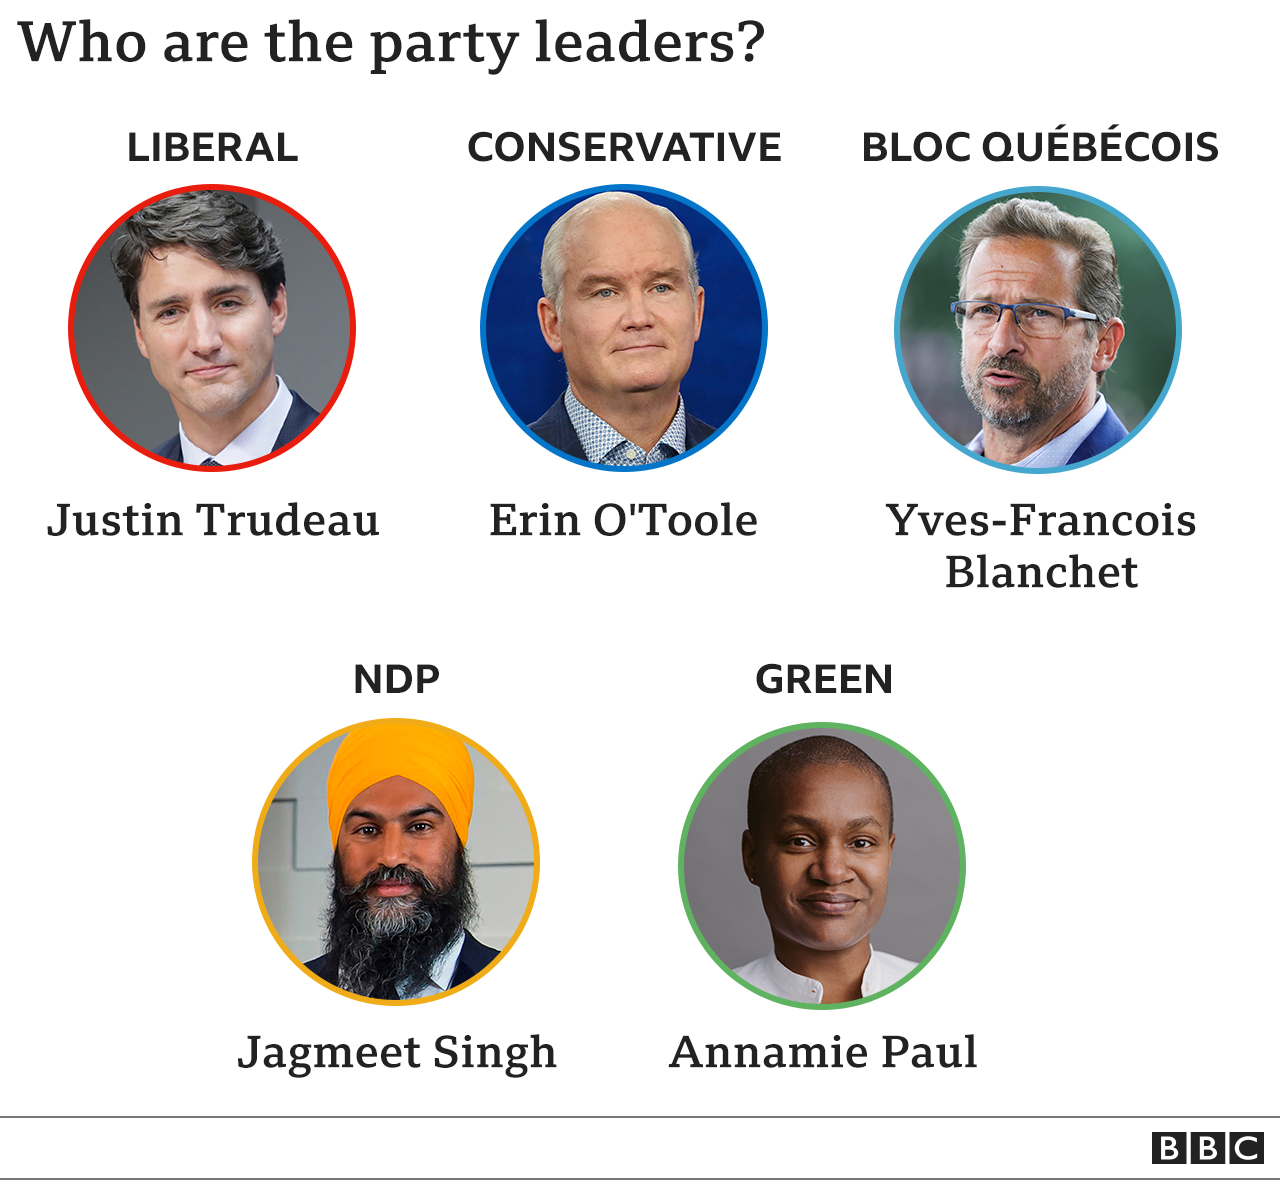 Составное изображение пяти партийных лидеров